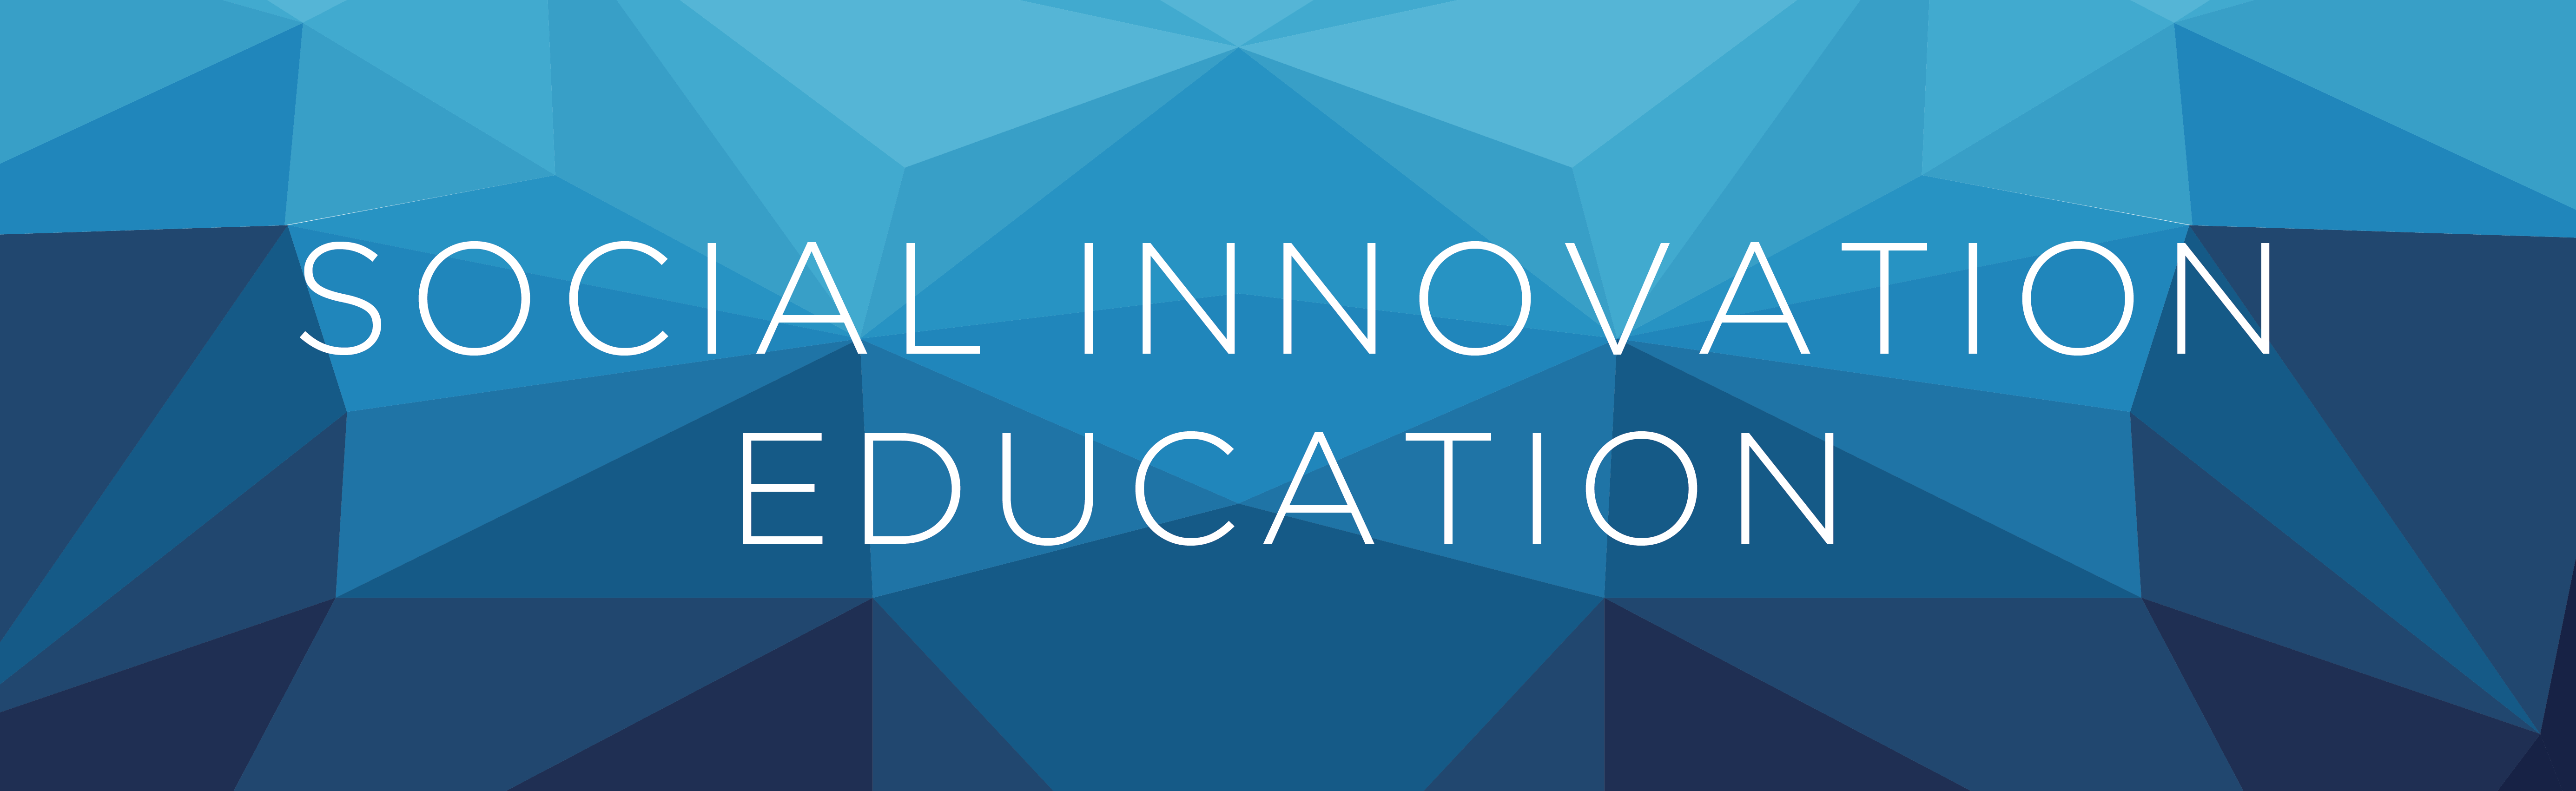 Social Innovation Education